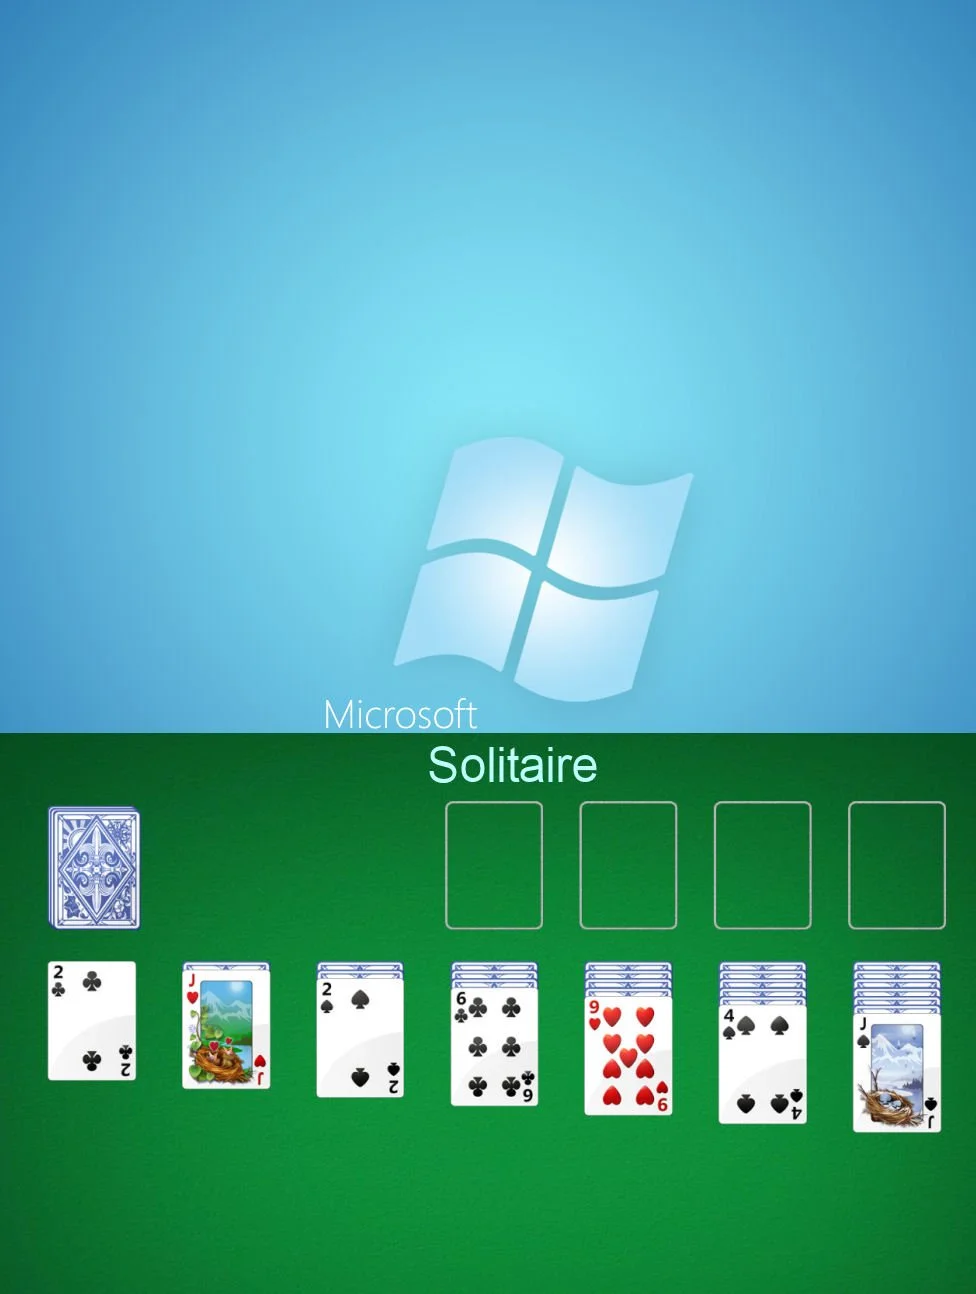 Microsoft Solitaire